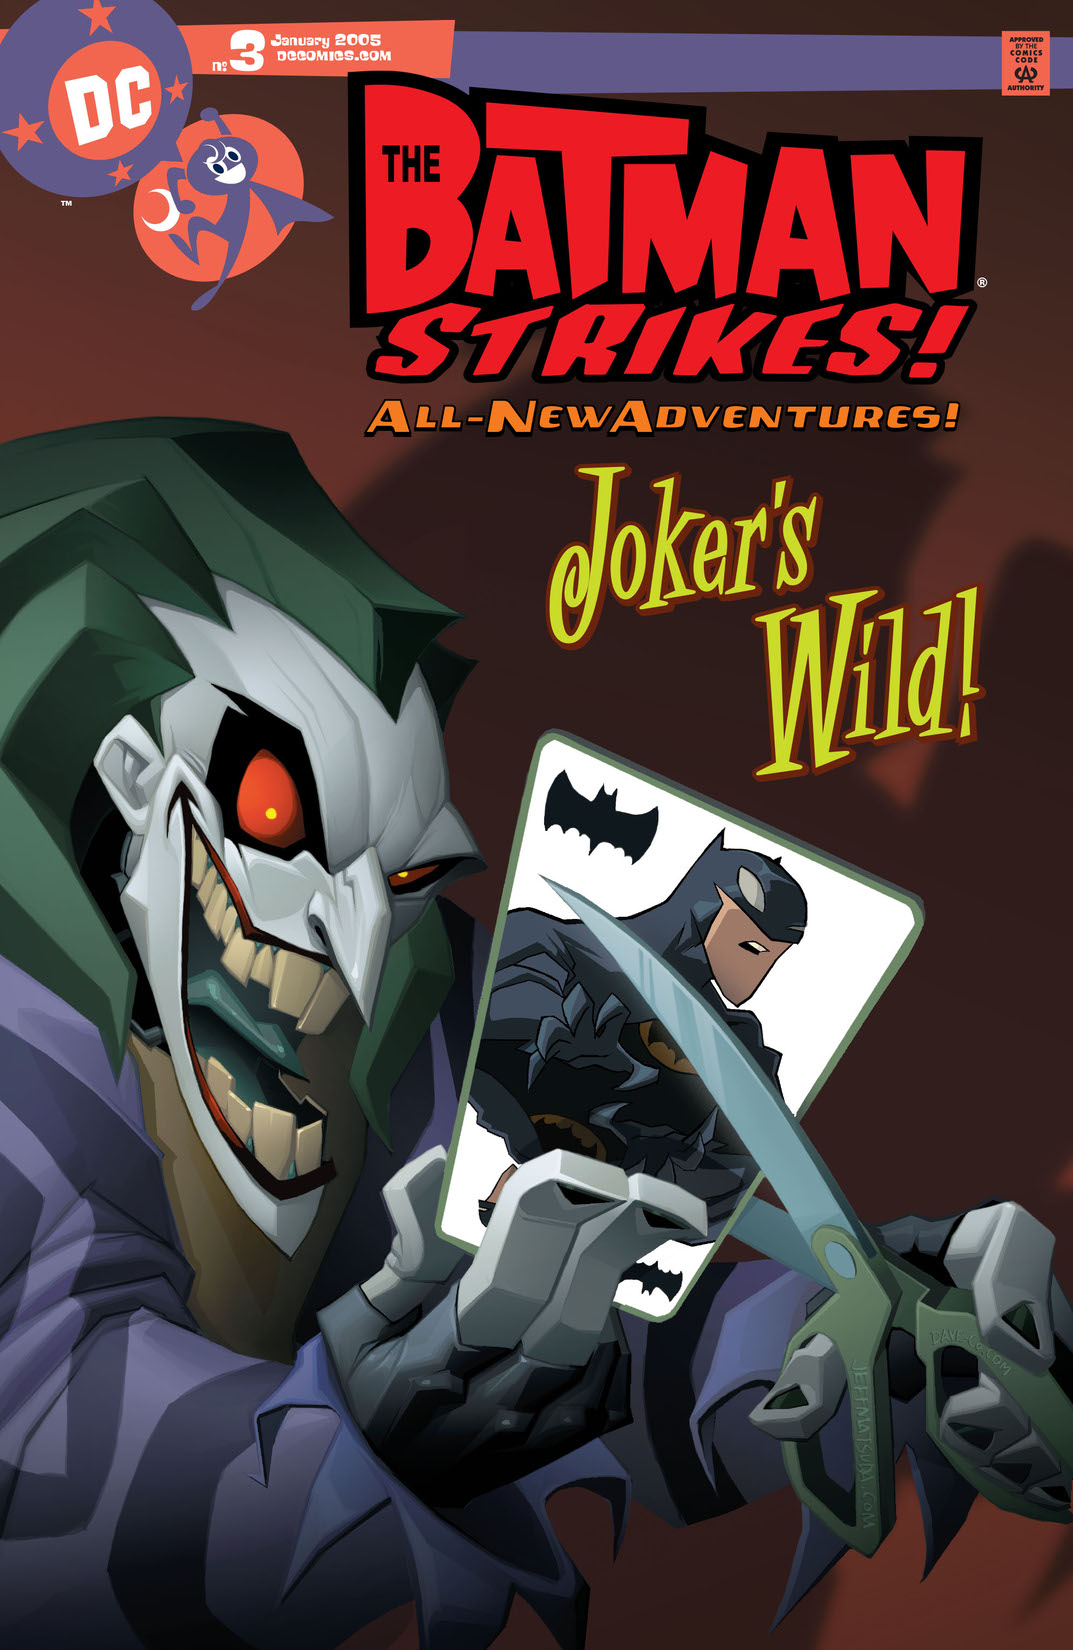 Batman Strikes! #3 preview images